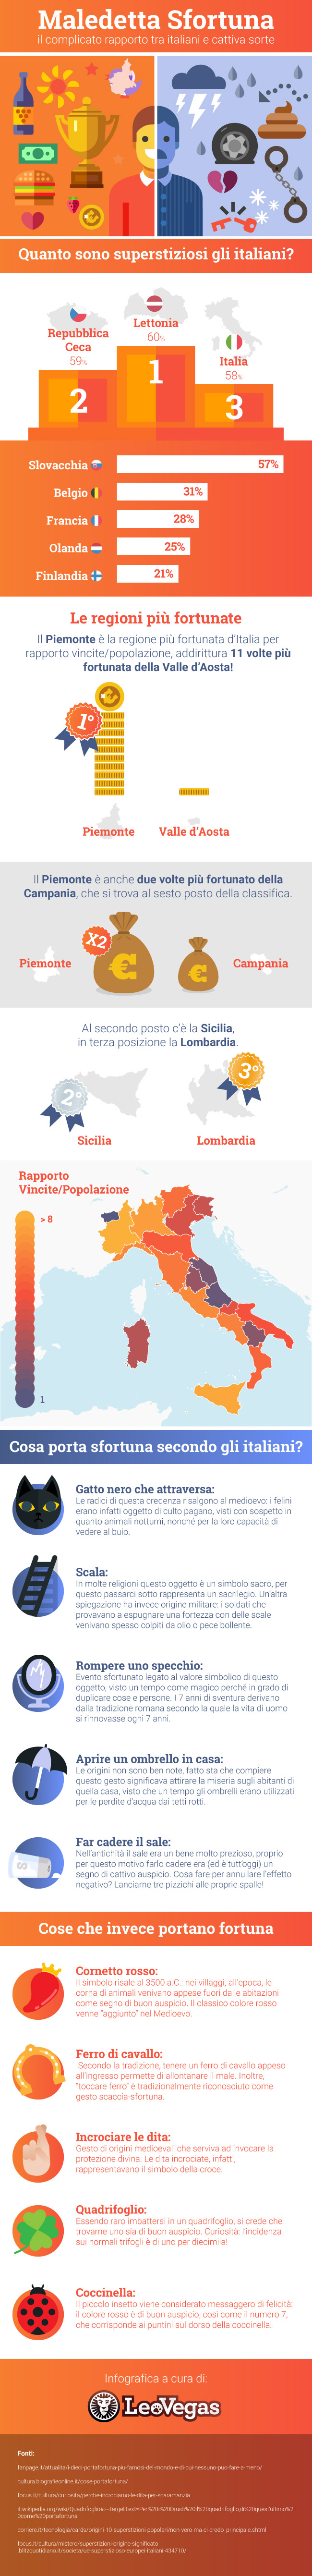 L'infografica Maledetta Sfortuna:quanto sono superstiziosi gli italiani